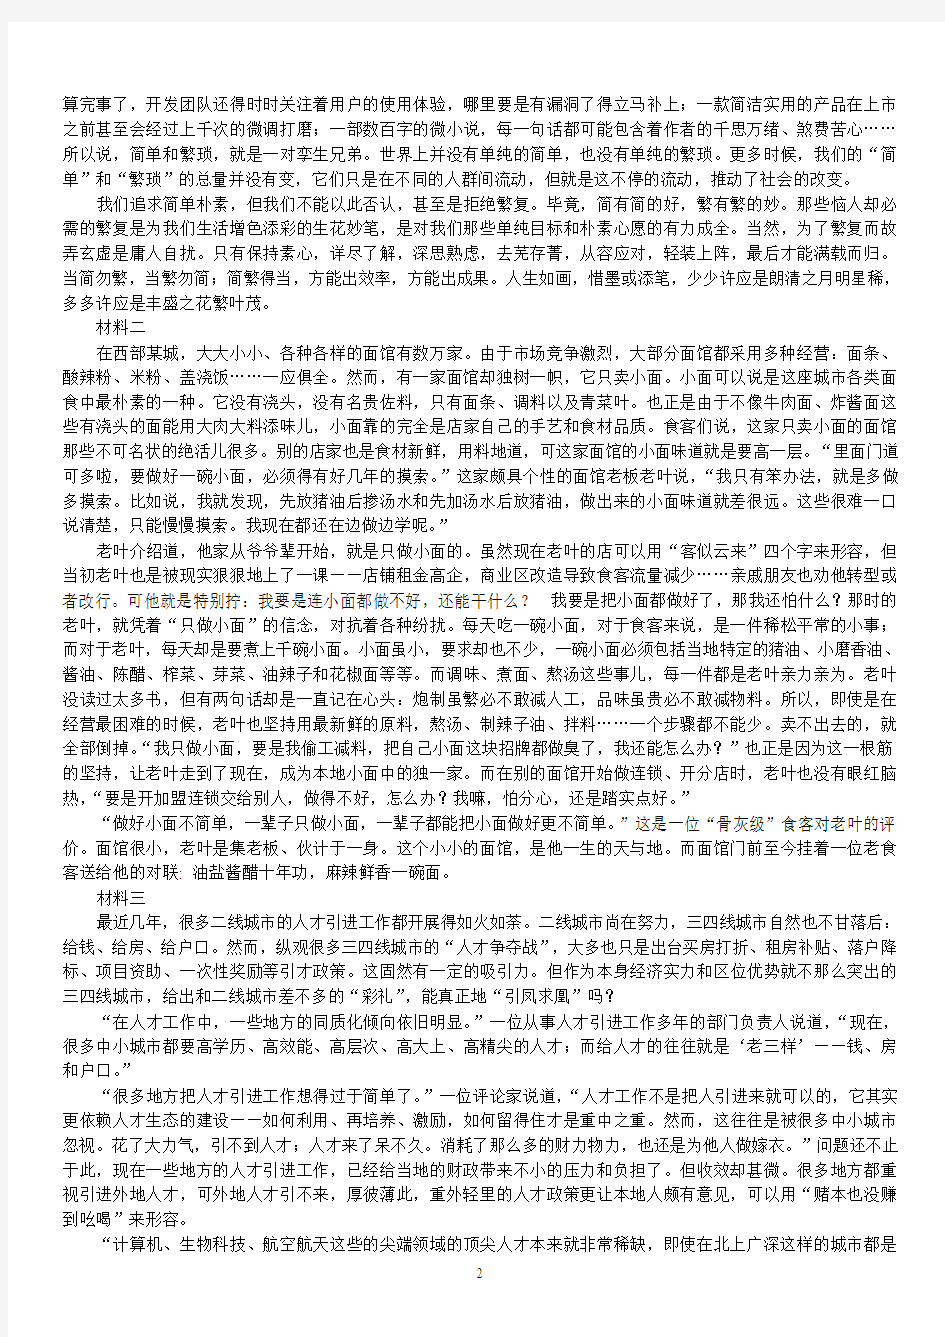 2018年甘肃省公务员录用考试《申论》真题及标准答案